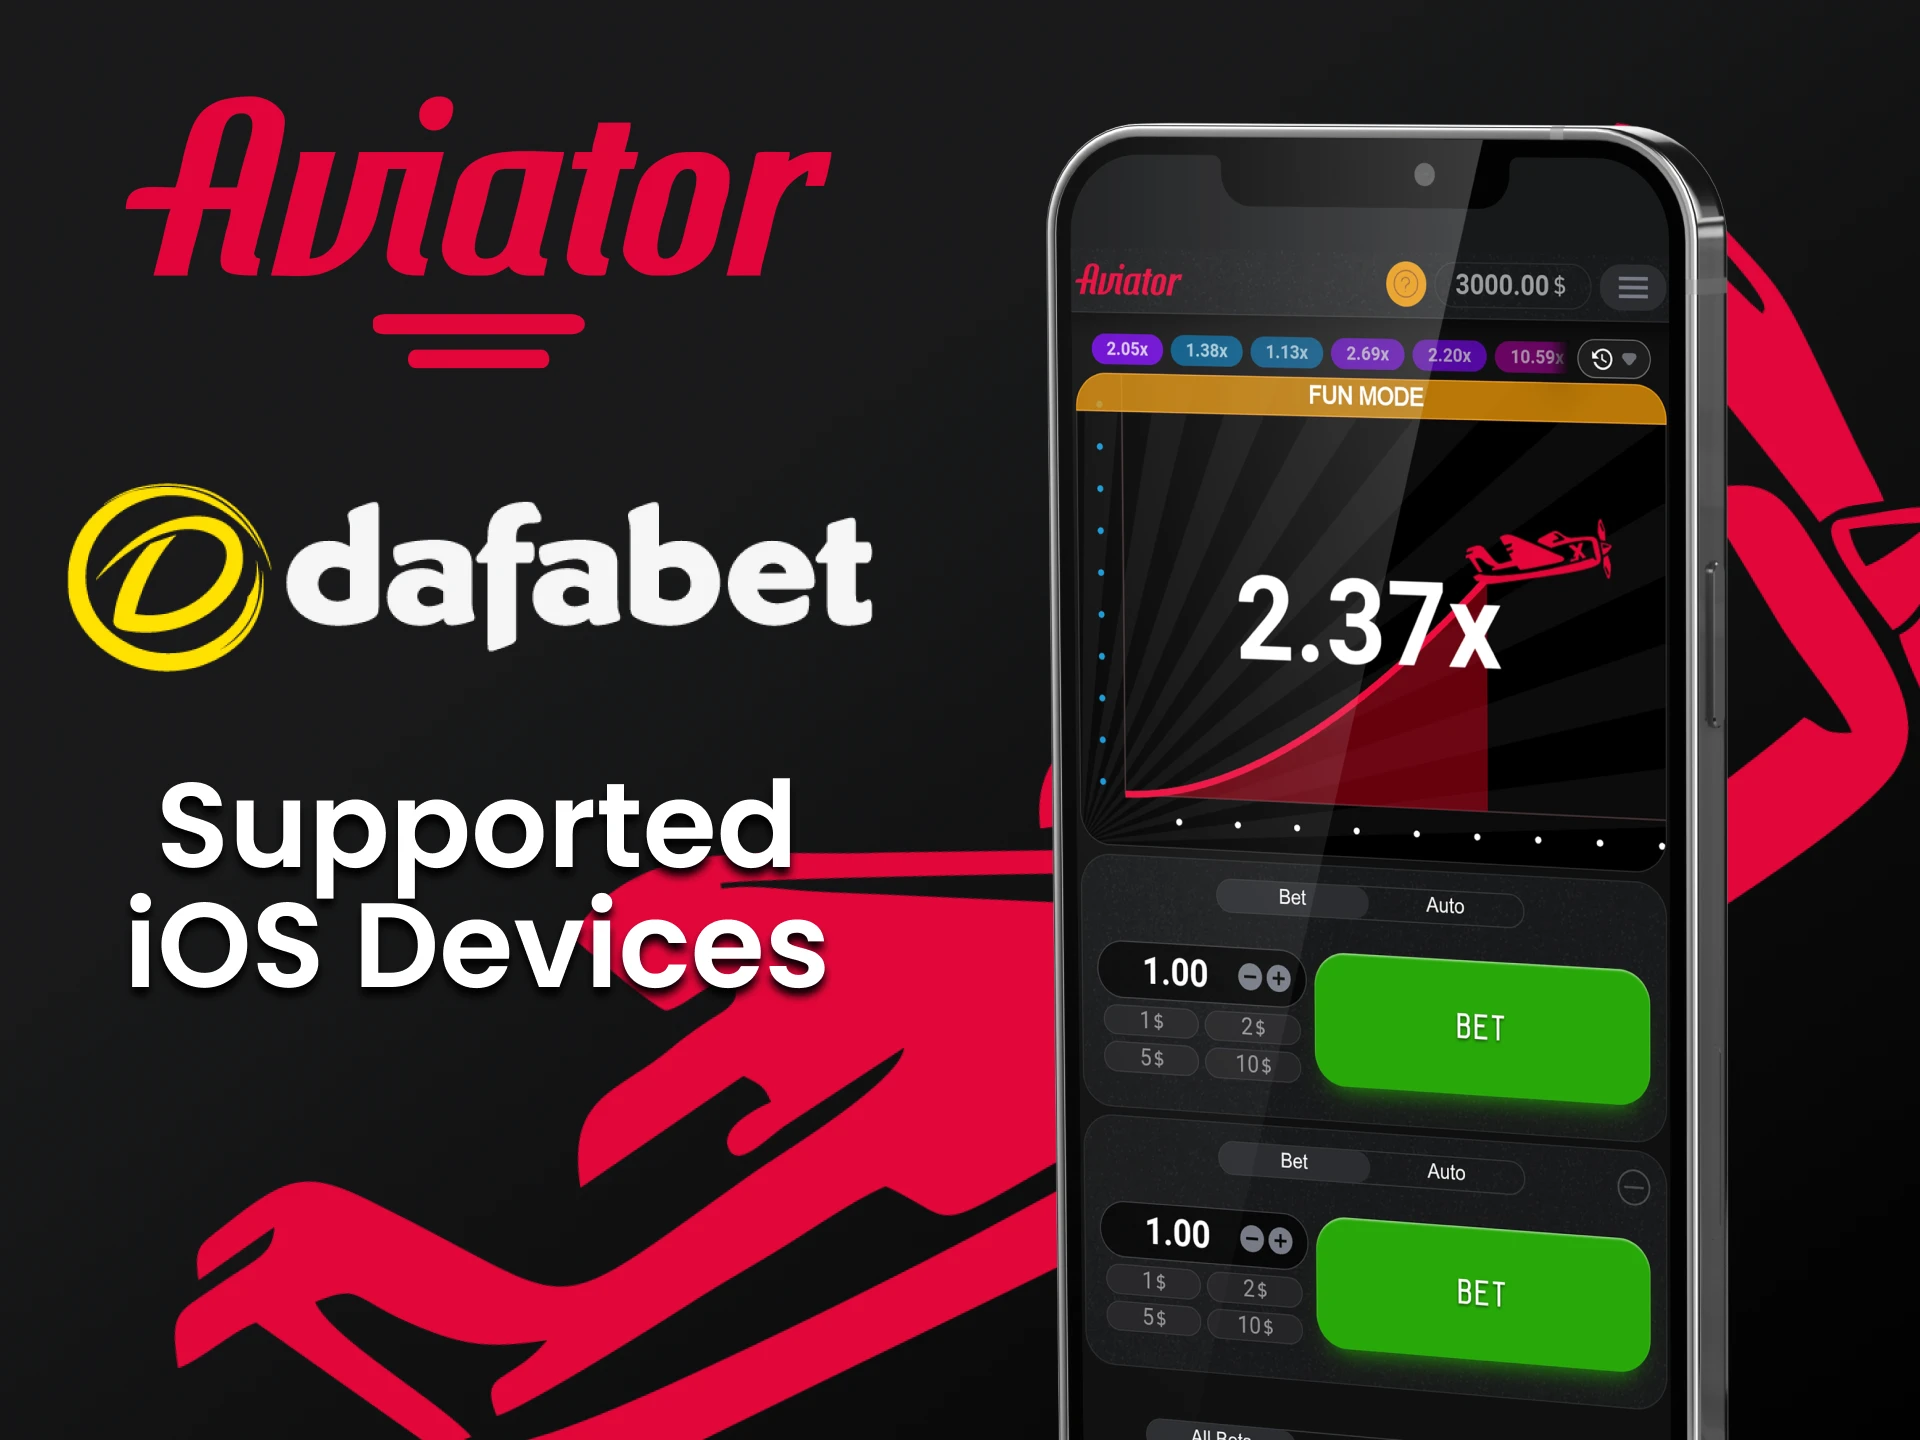 Jogue Aviator na Dafabet através de seu dispositivo iOS.